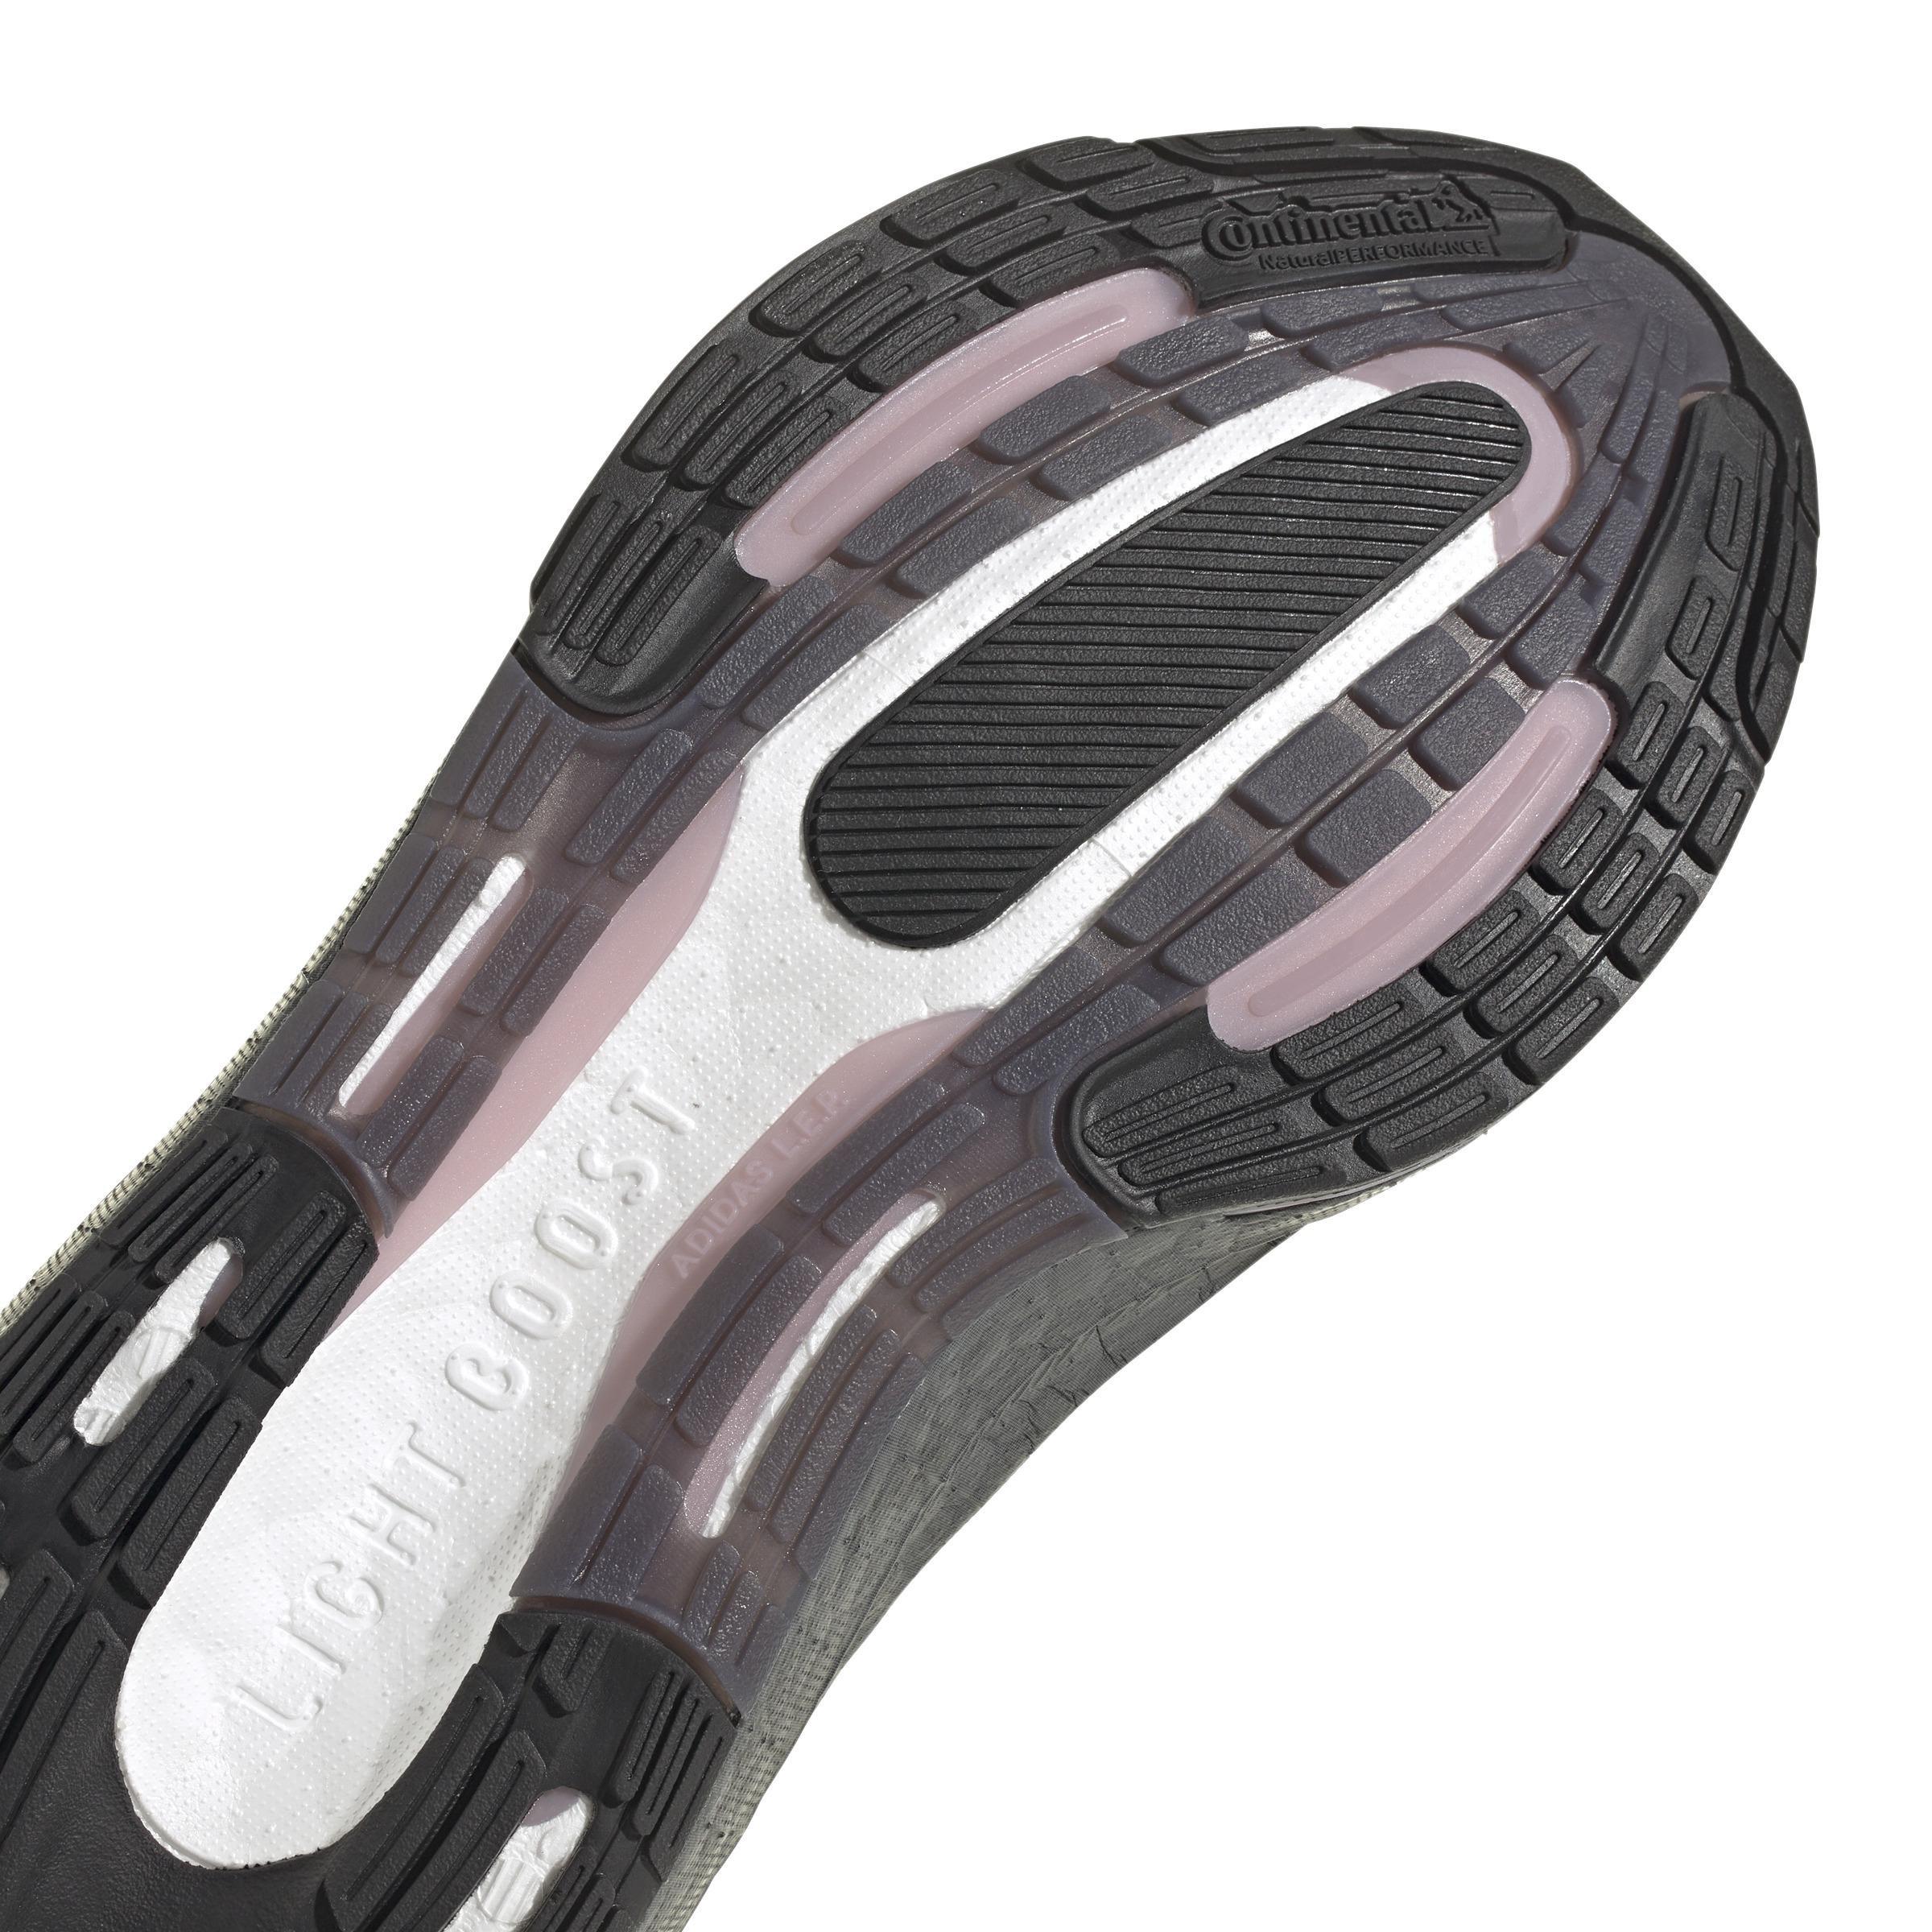 adidas - Women Ultraboost Light Running Shoes, Purple